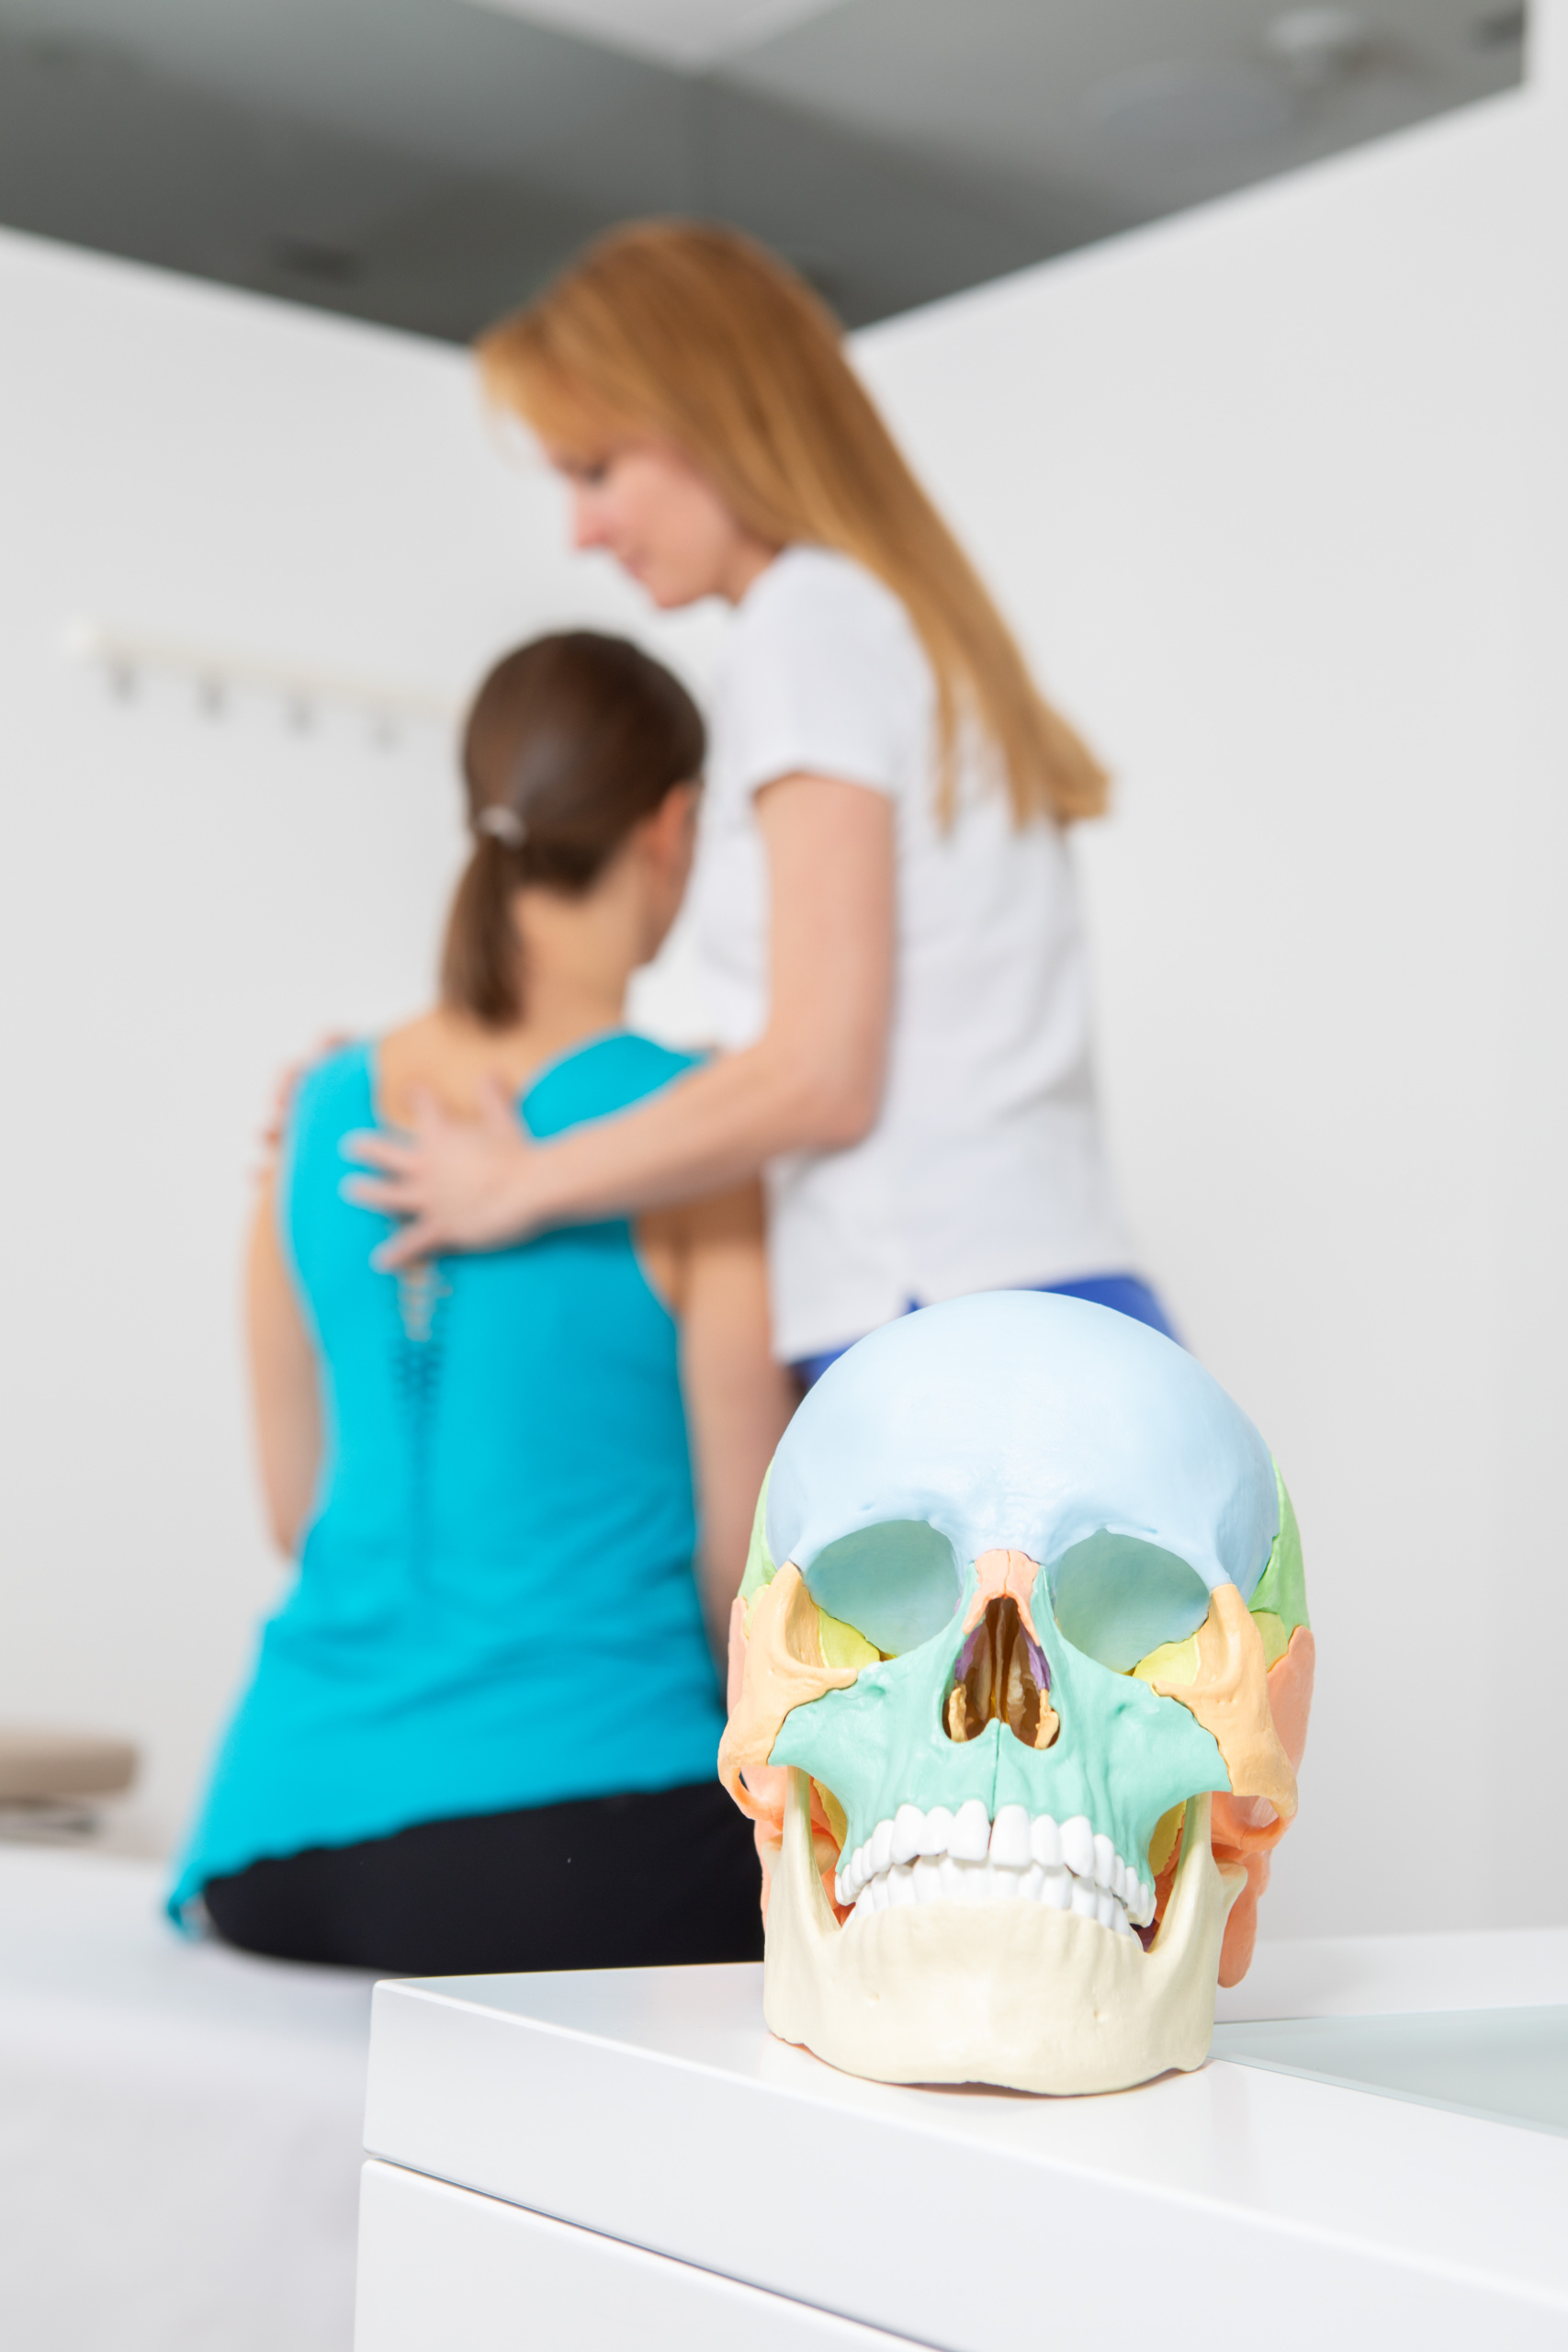 Osteopathie ist eine ganzheitliche Methode für die Gesundheit. Vereinbaren Sie noch heute einen Termin im Sportorthopädie Zentrum in Wien 13 Hietzing